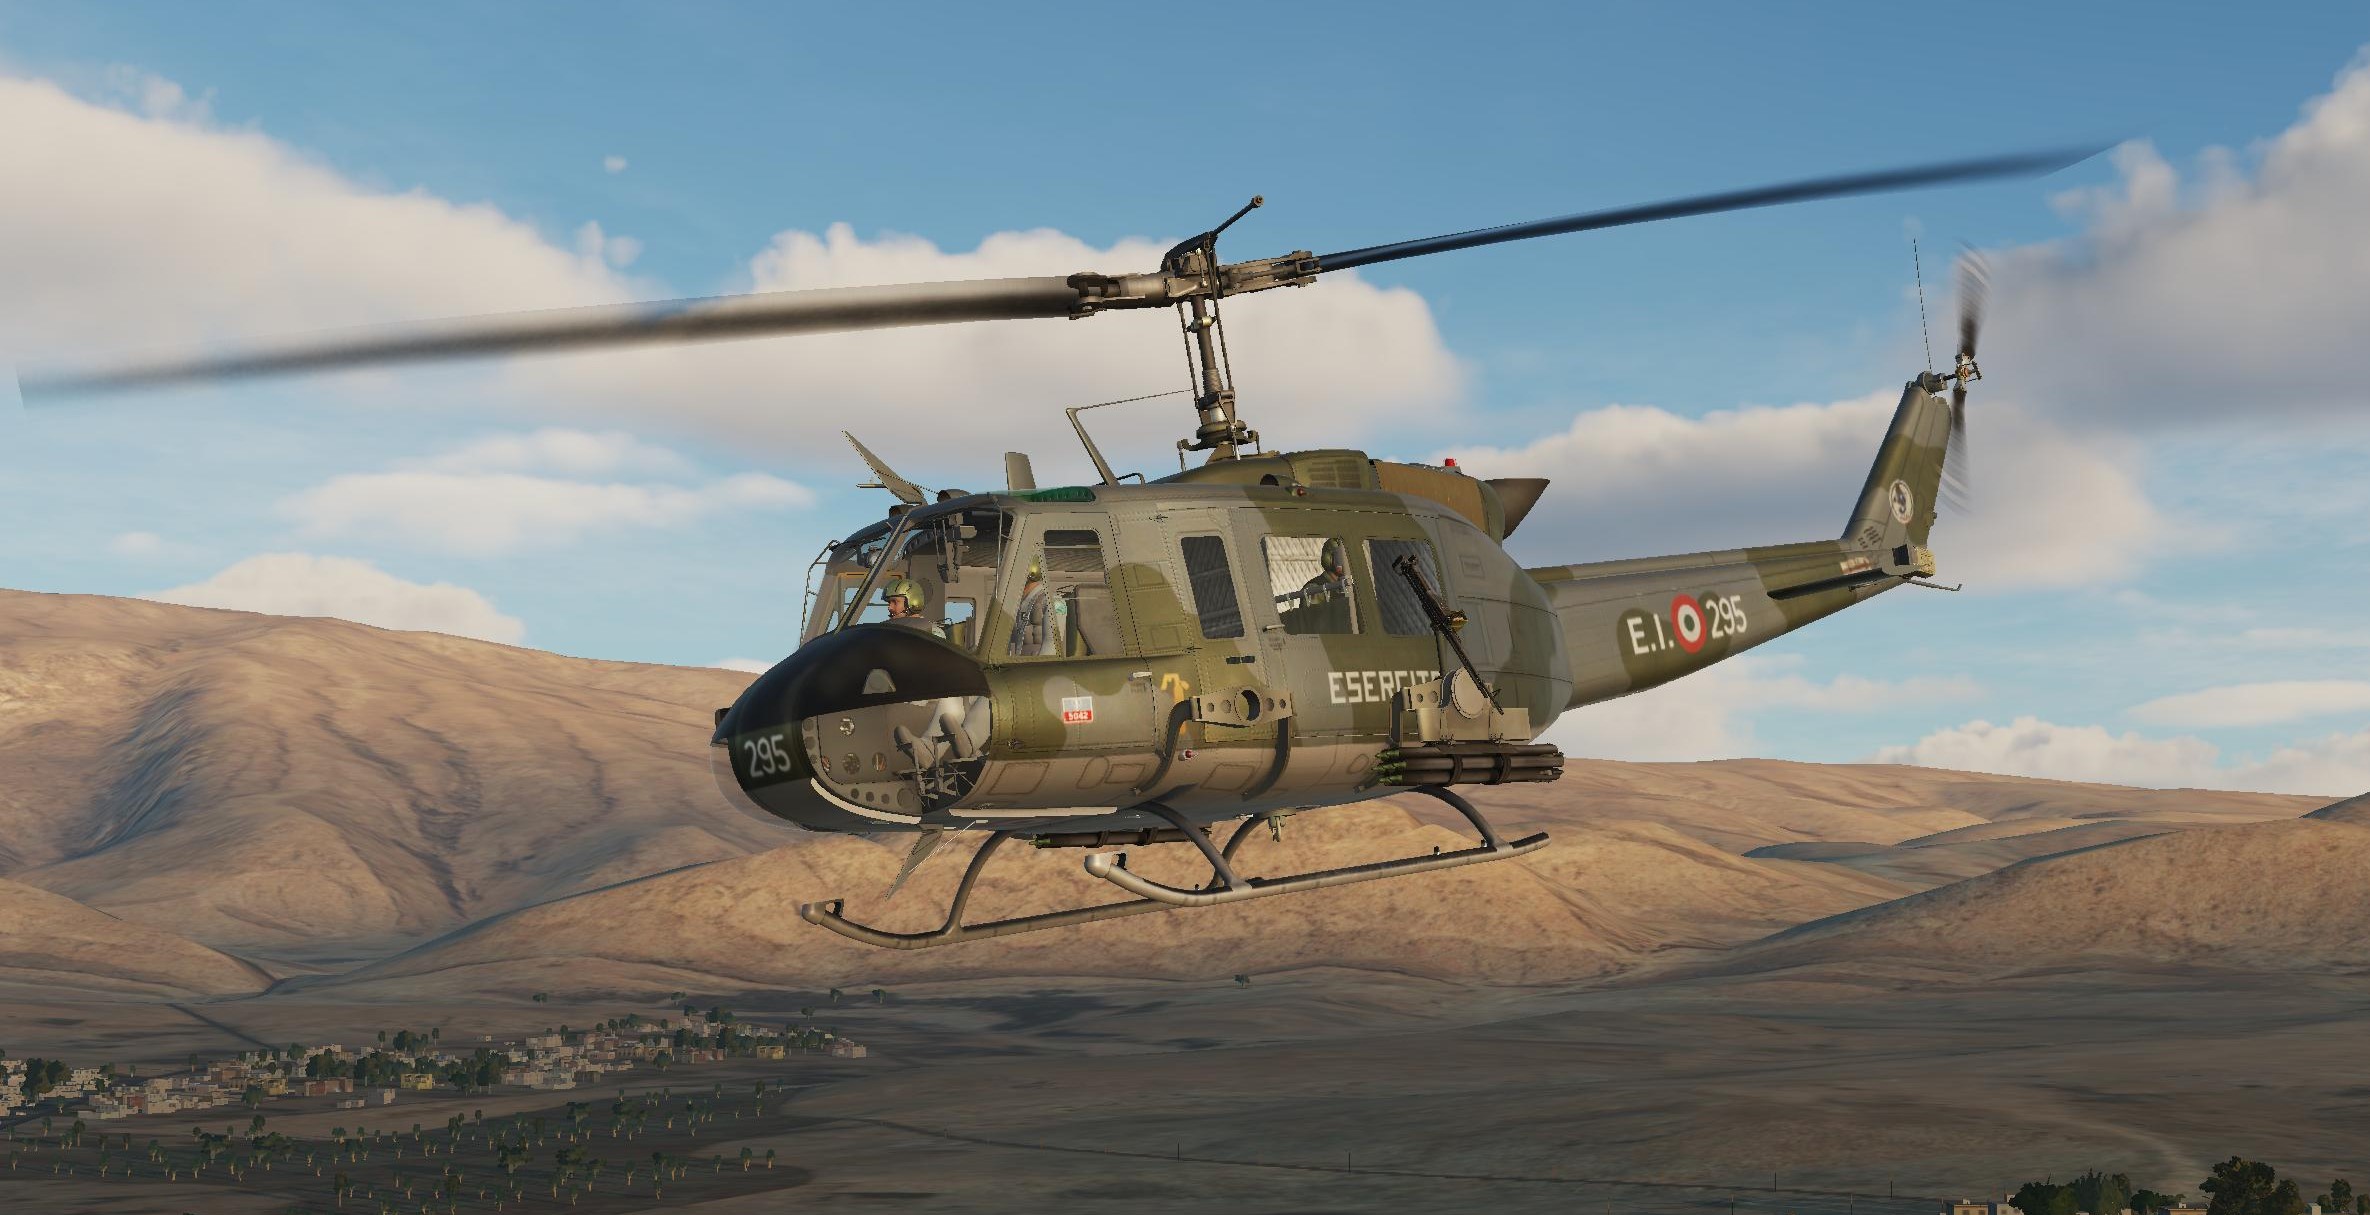 AB-205 Esercito Italiano (UH-1H Italian Army)